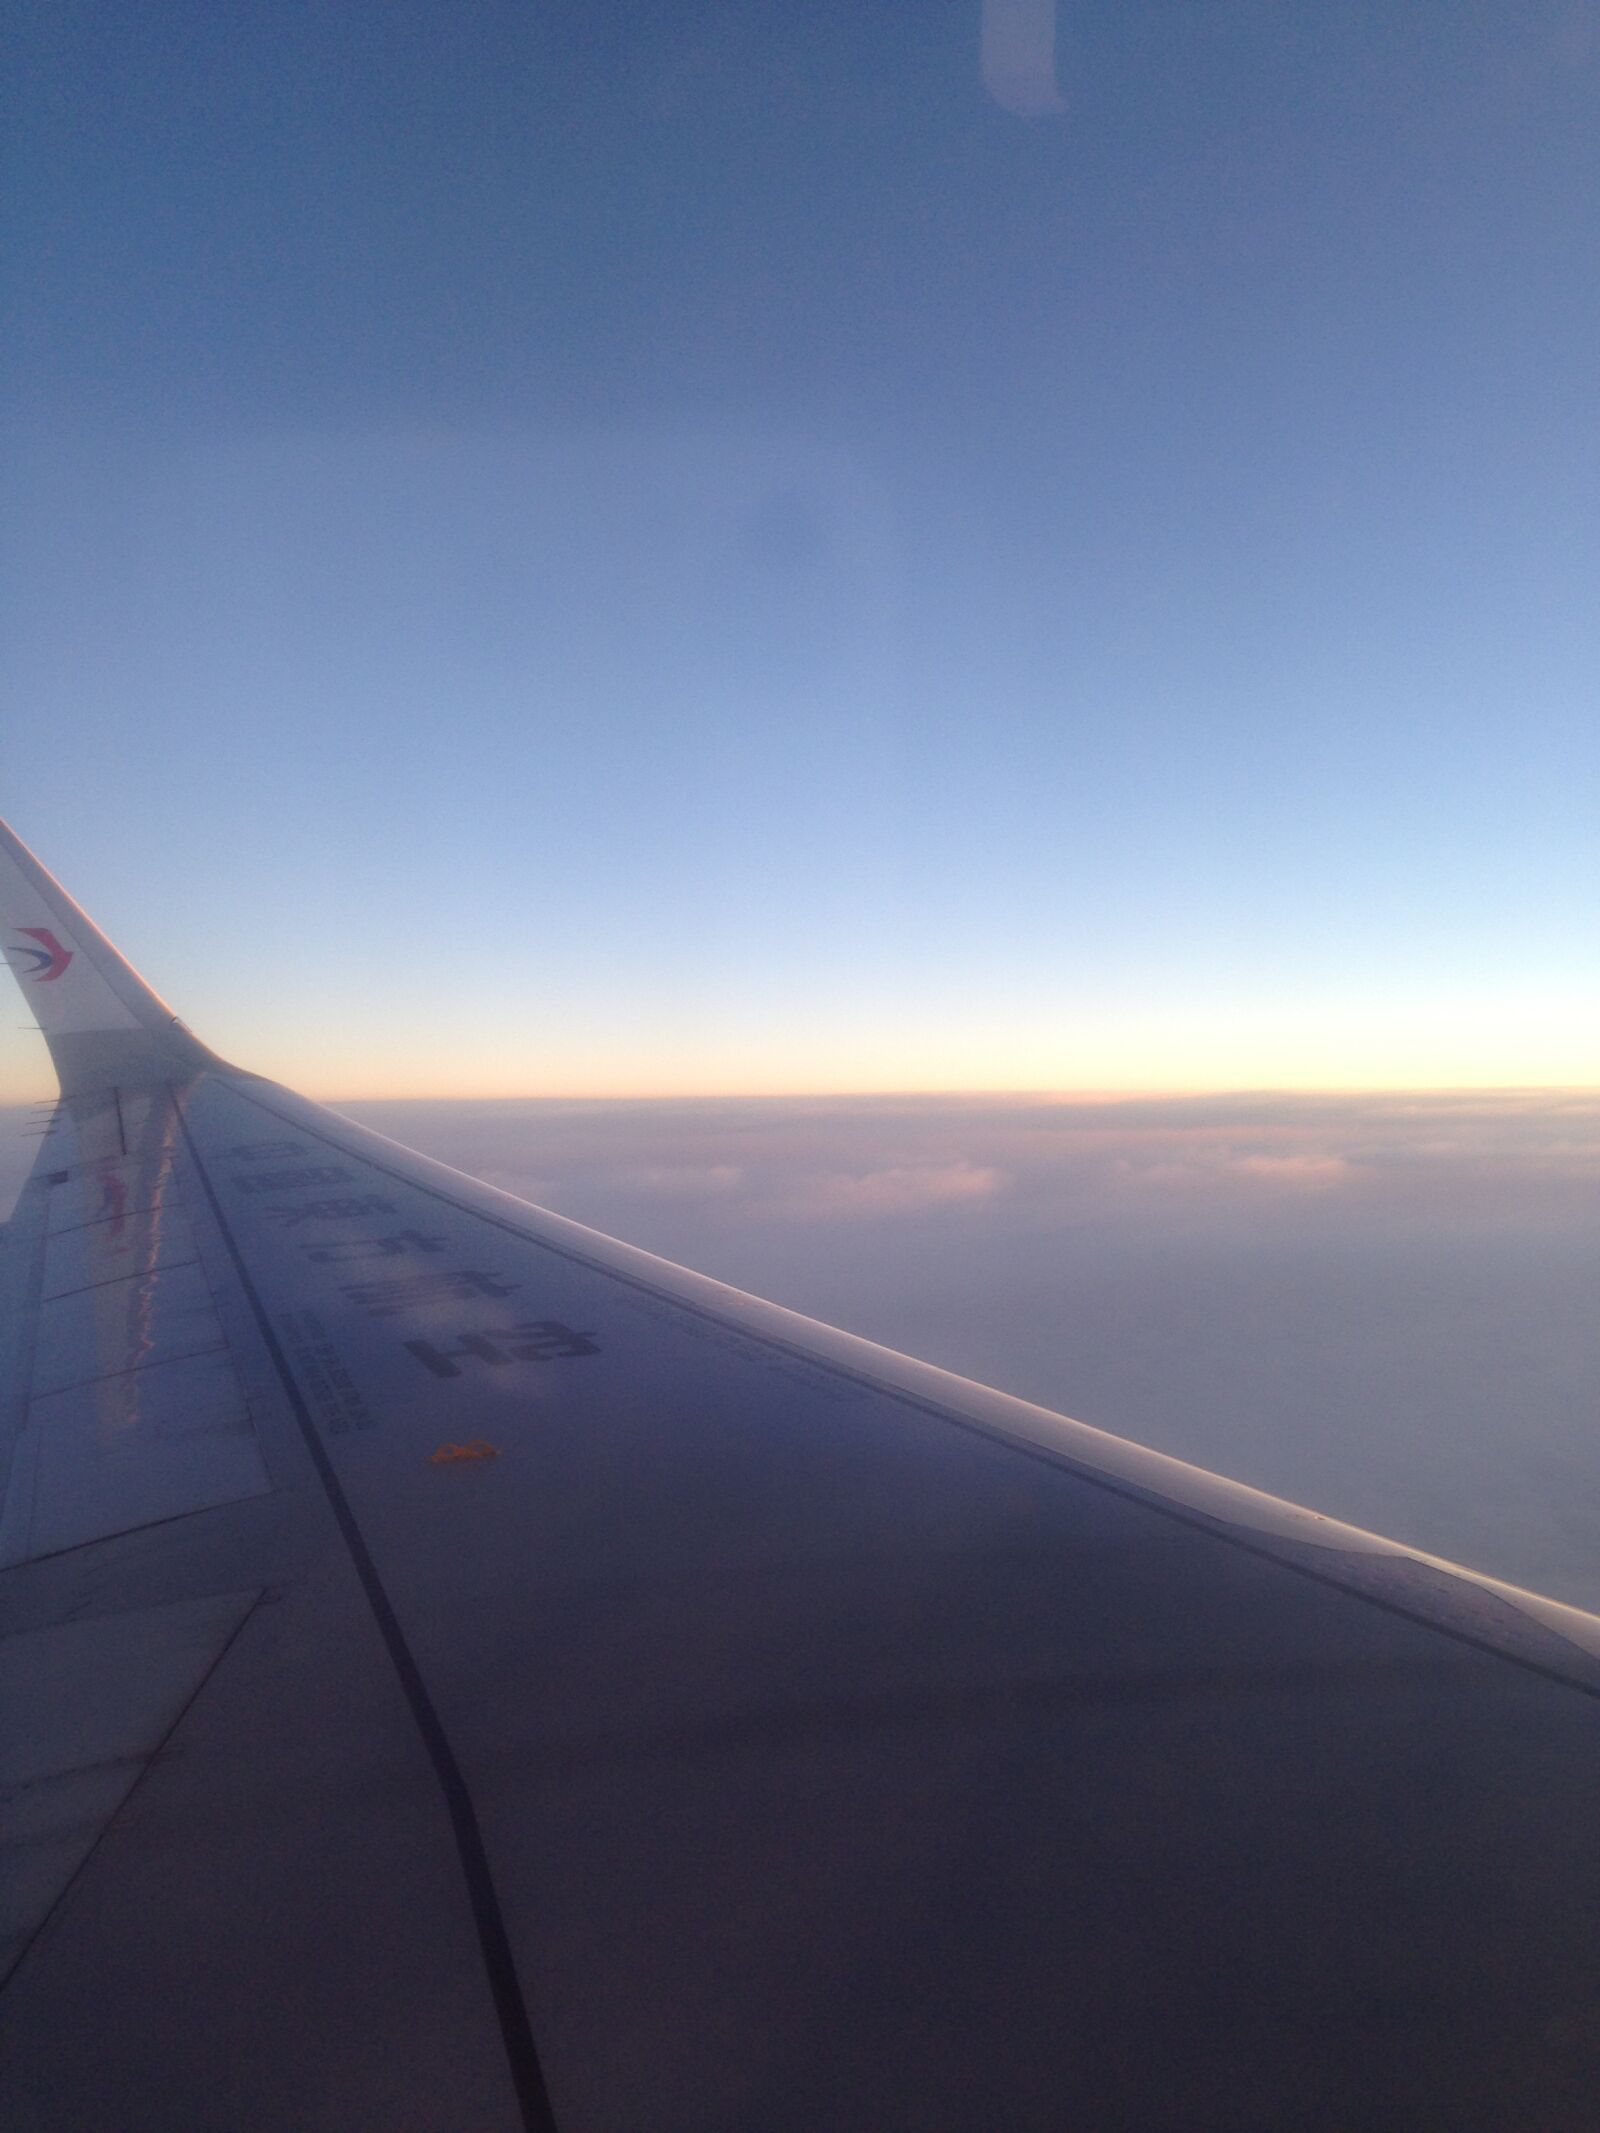 Apple iPhone 5 sample photo. Flying, plane, sunrise photography